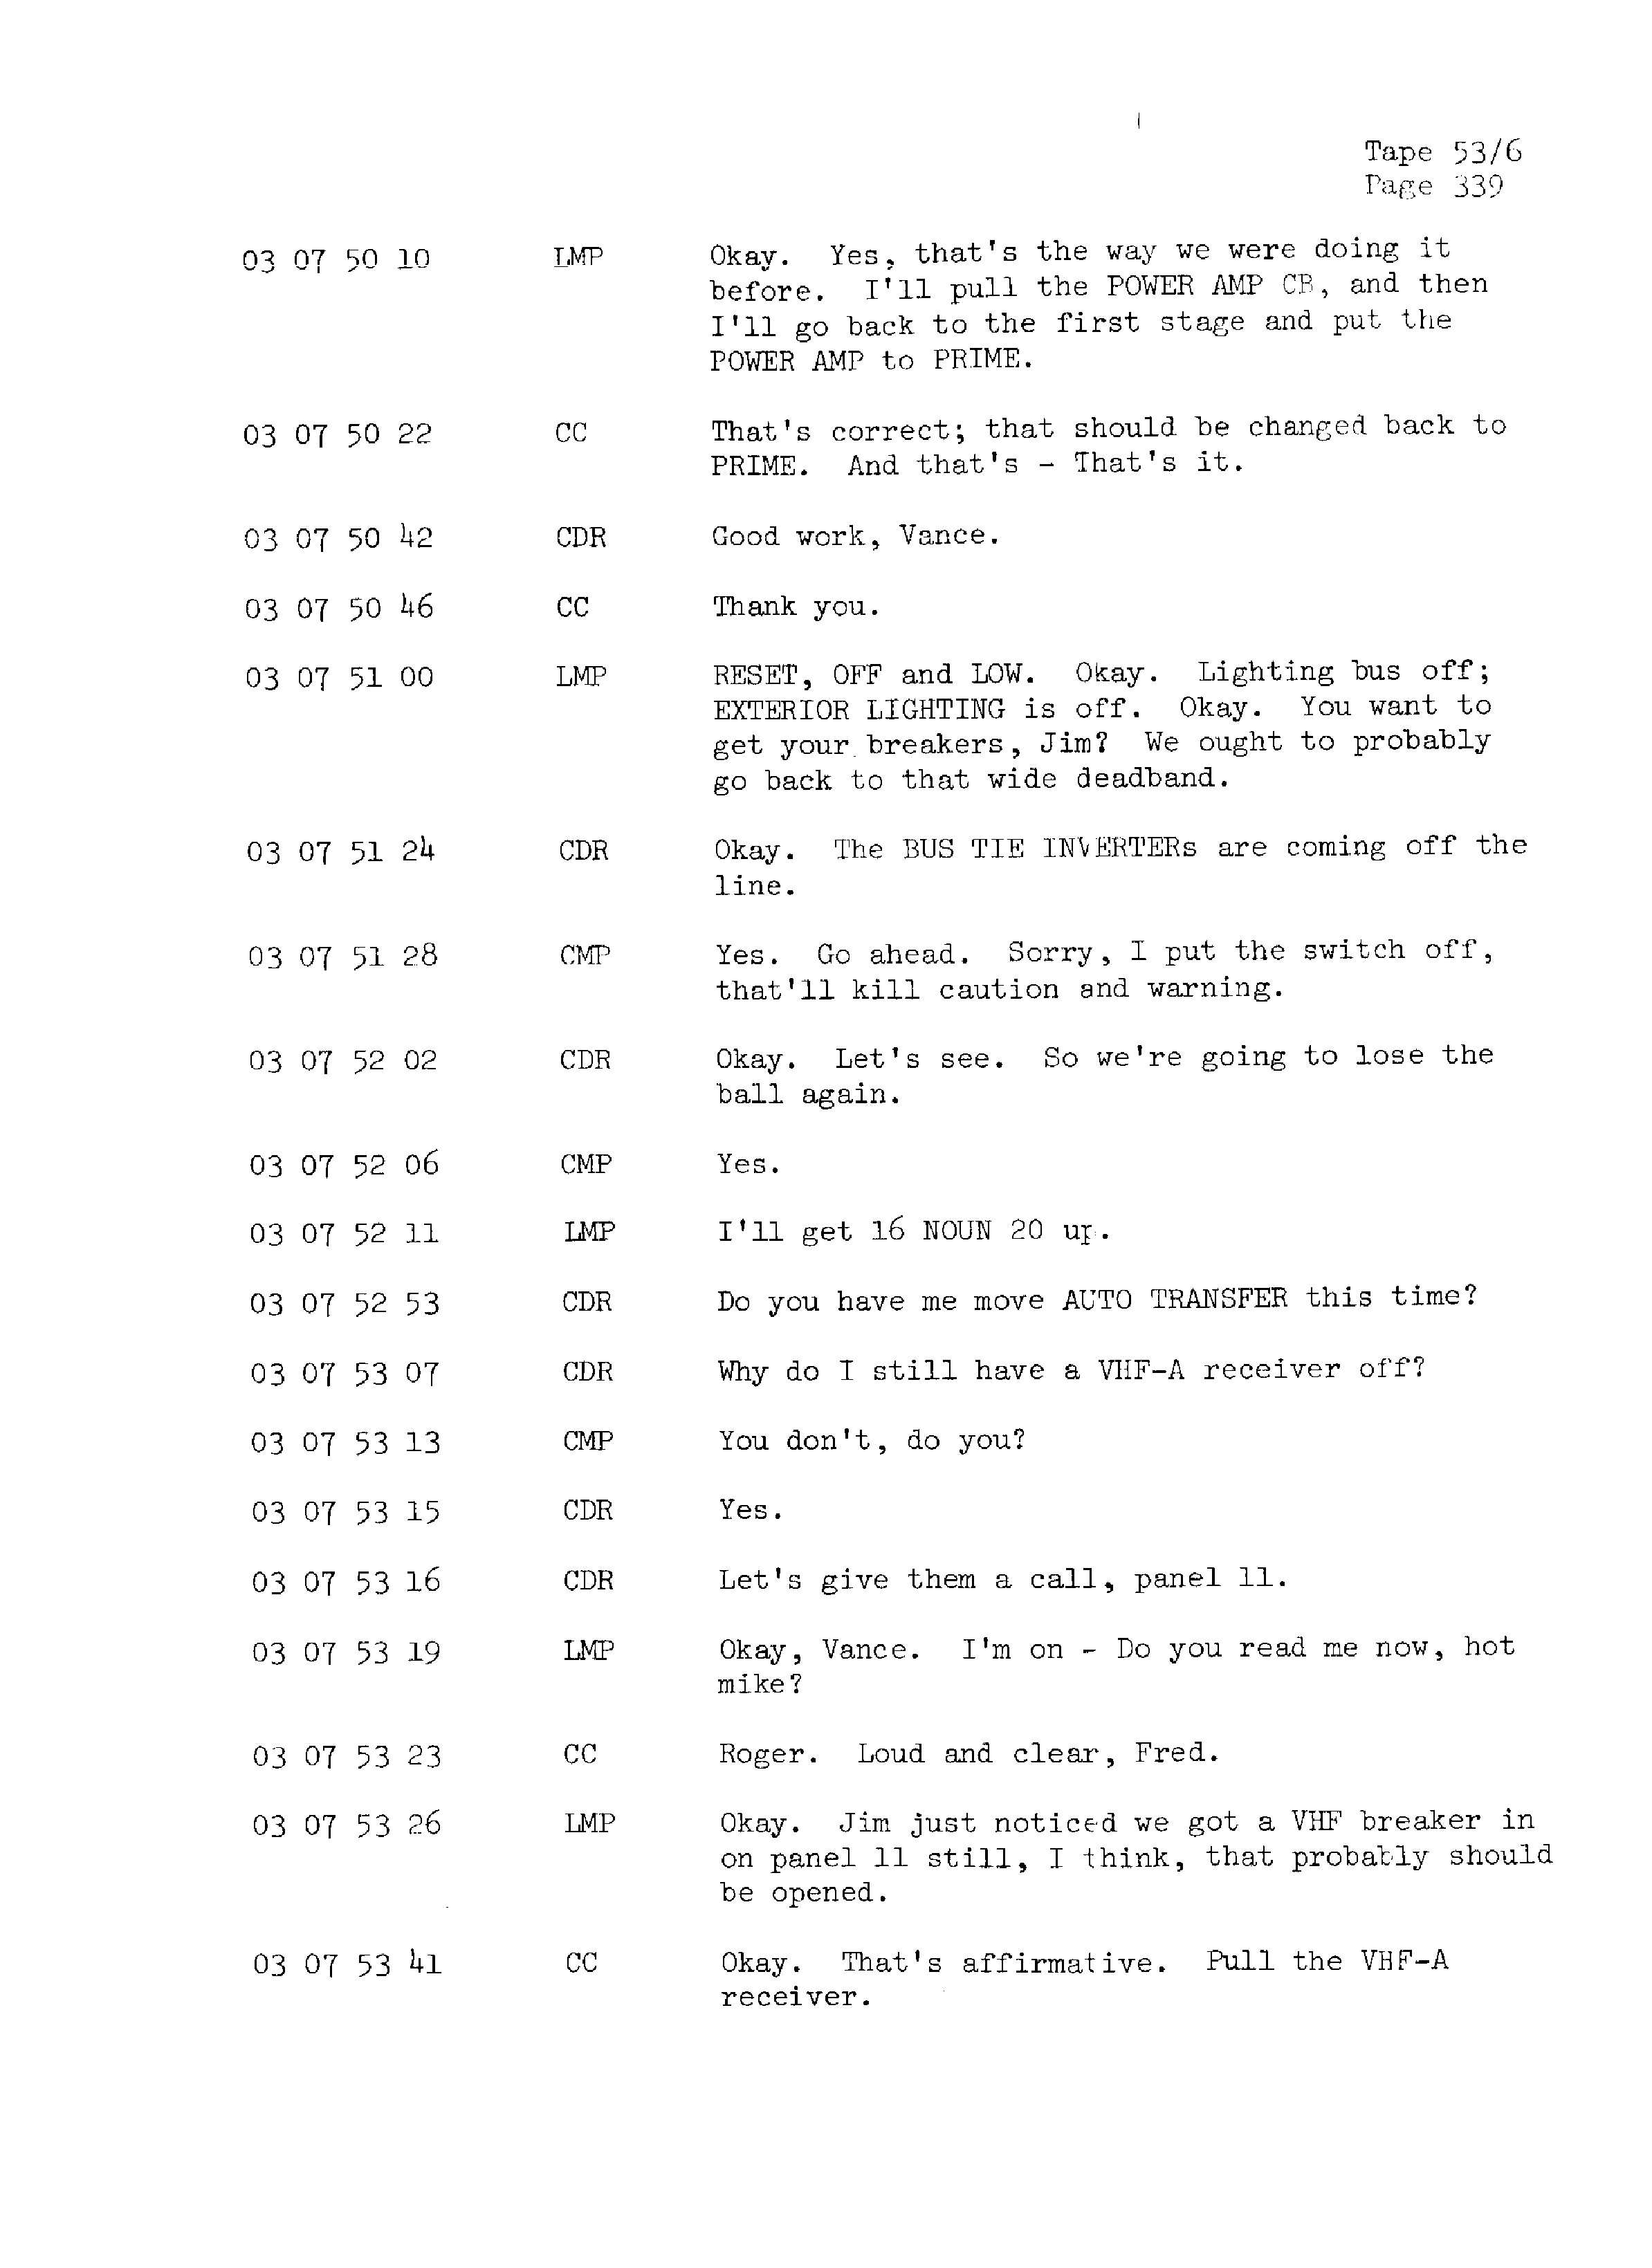 Page 346 of Apollo 13’s original transcript